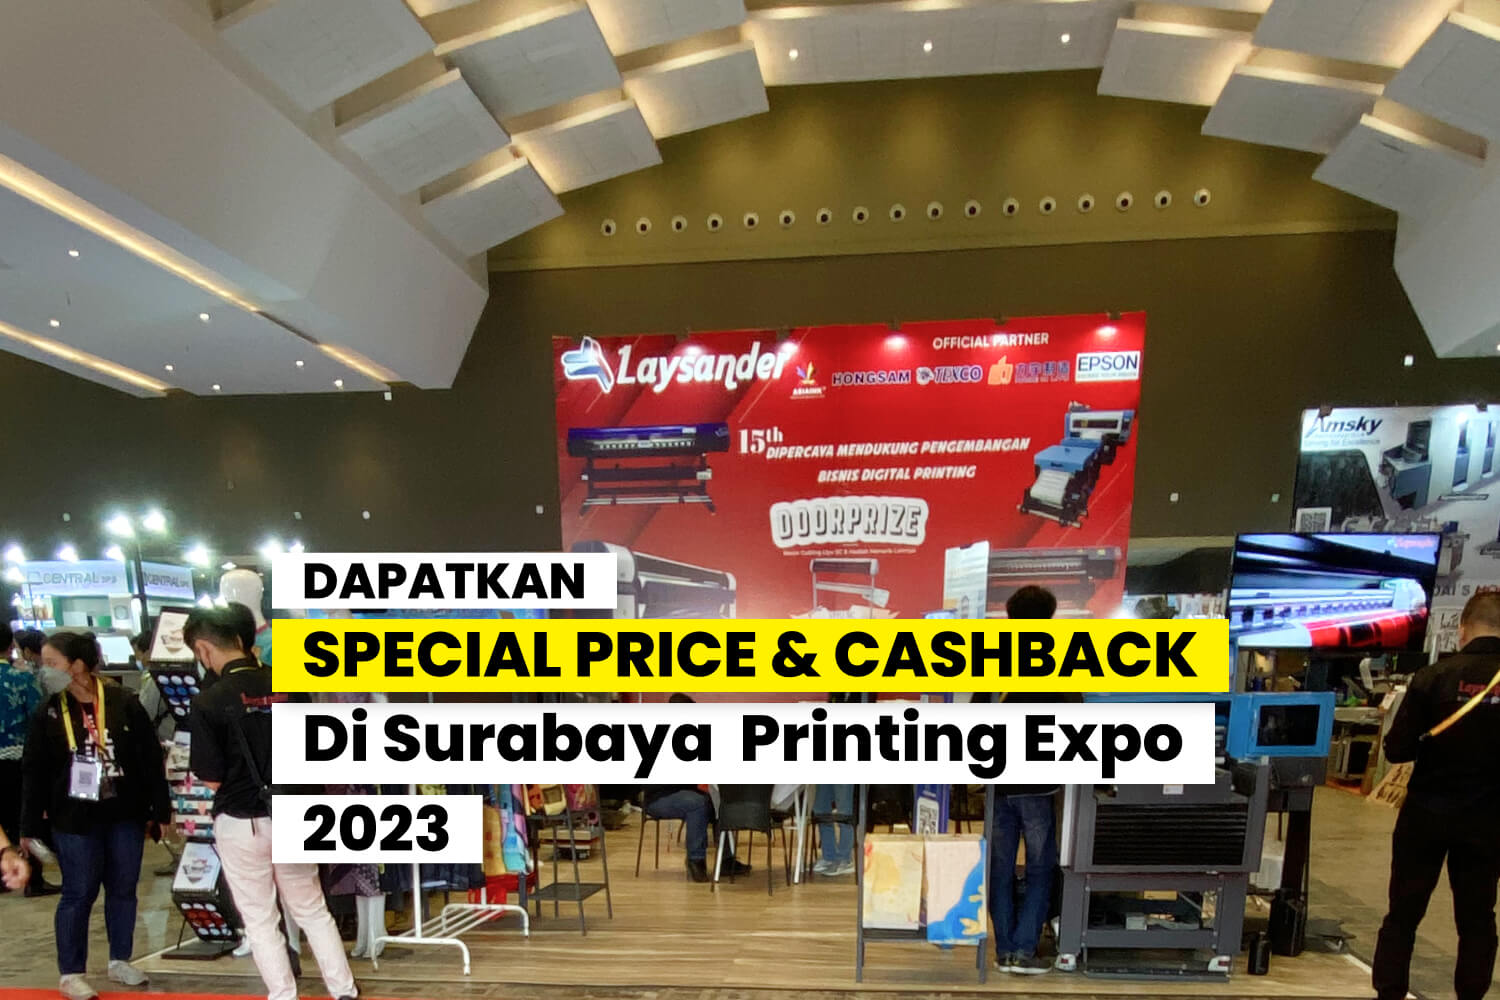 Laysander Di Surabaya Printing Expo 2023: Inovasi & Profit Dalam Digital Printing